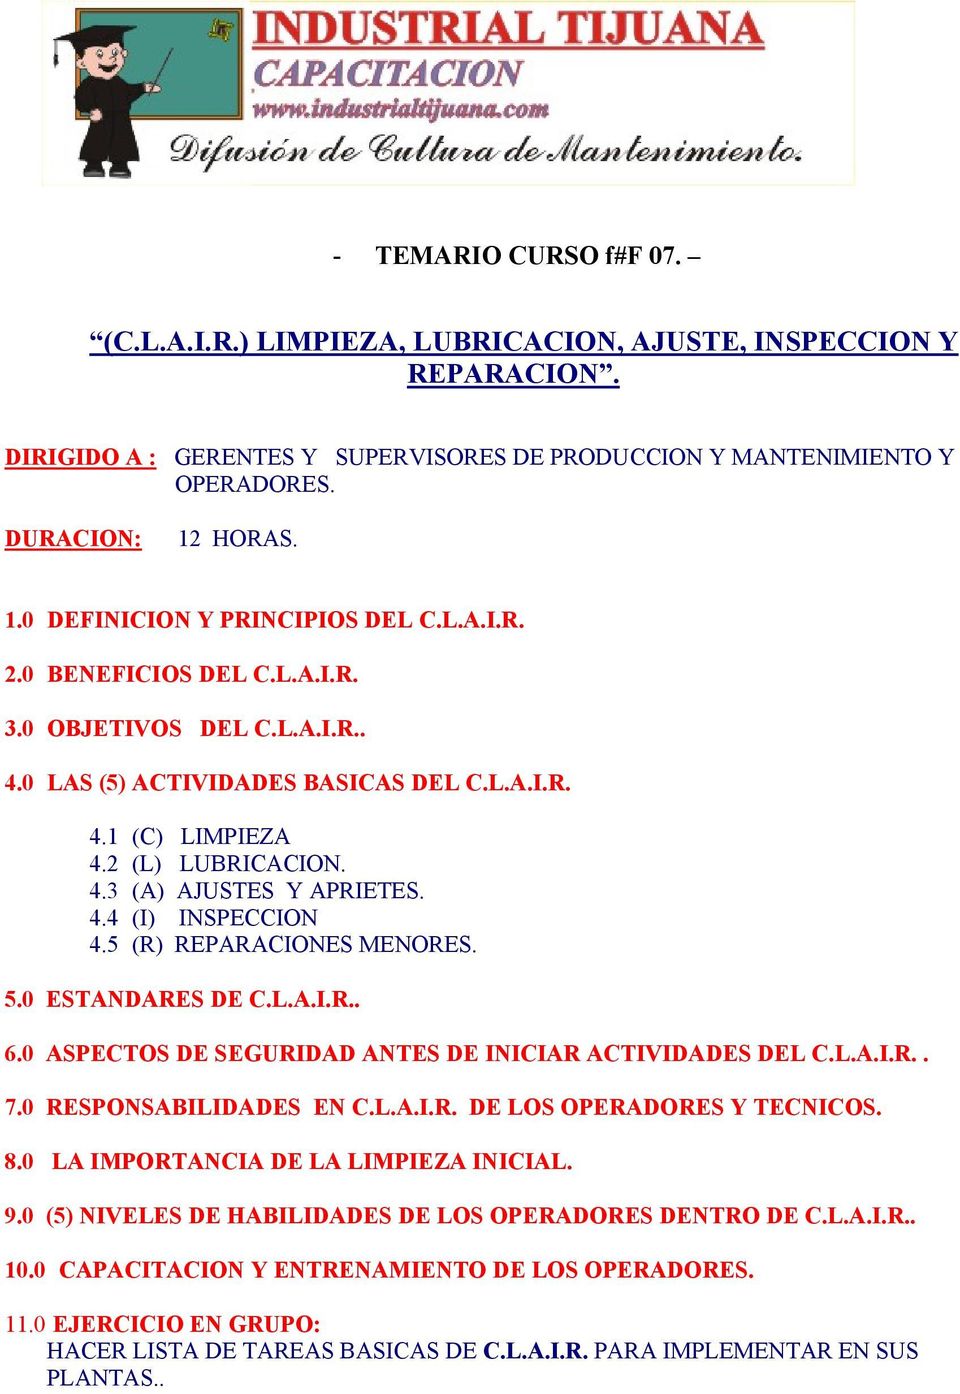 4.4 (I) INSPECCION 4.5 (R) REPARACIONES MENORES. 5.0 ESTANDARES DE C.L.A.I.R.. 6.0 ASPECTOS DE SEGURIDAD ANTES DE INICIAR ACTIVIDADES DEL C.L.A.I.R.. 7.0 RESPONSABILIDADES EN C.L.A.I.R. DE LOS OPERADORES Y TECNICOS.